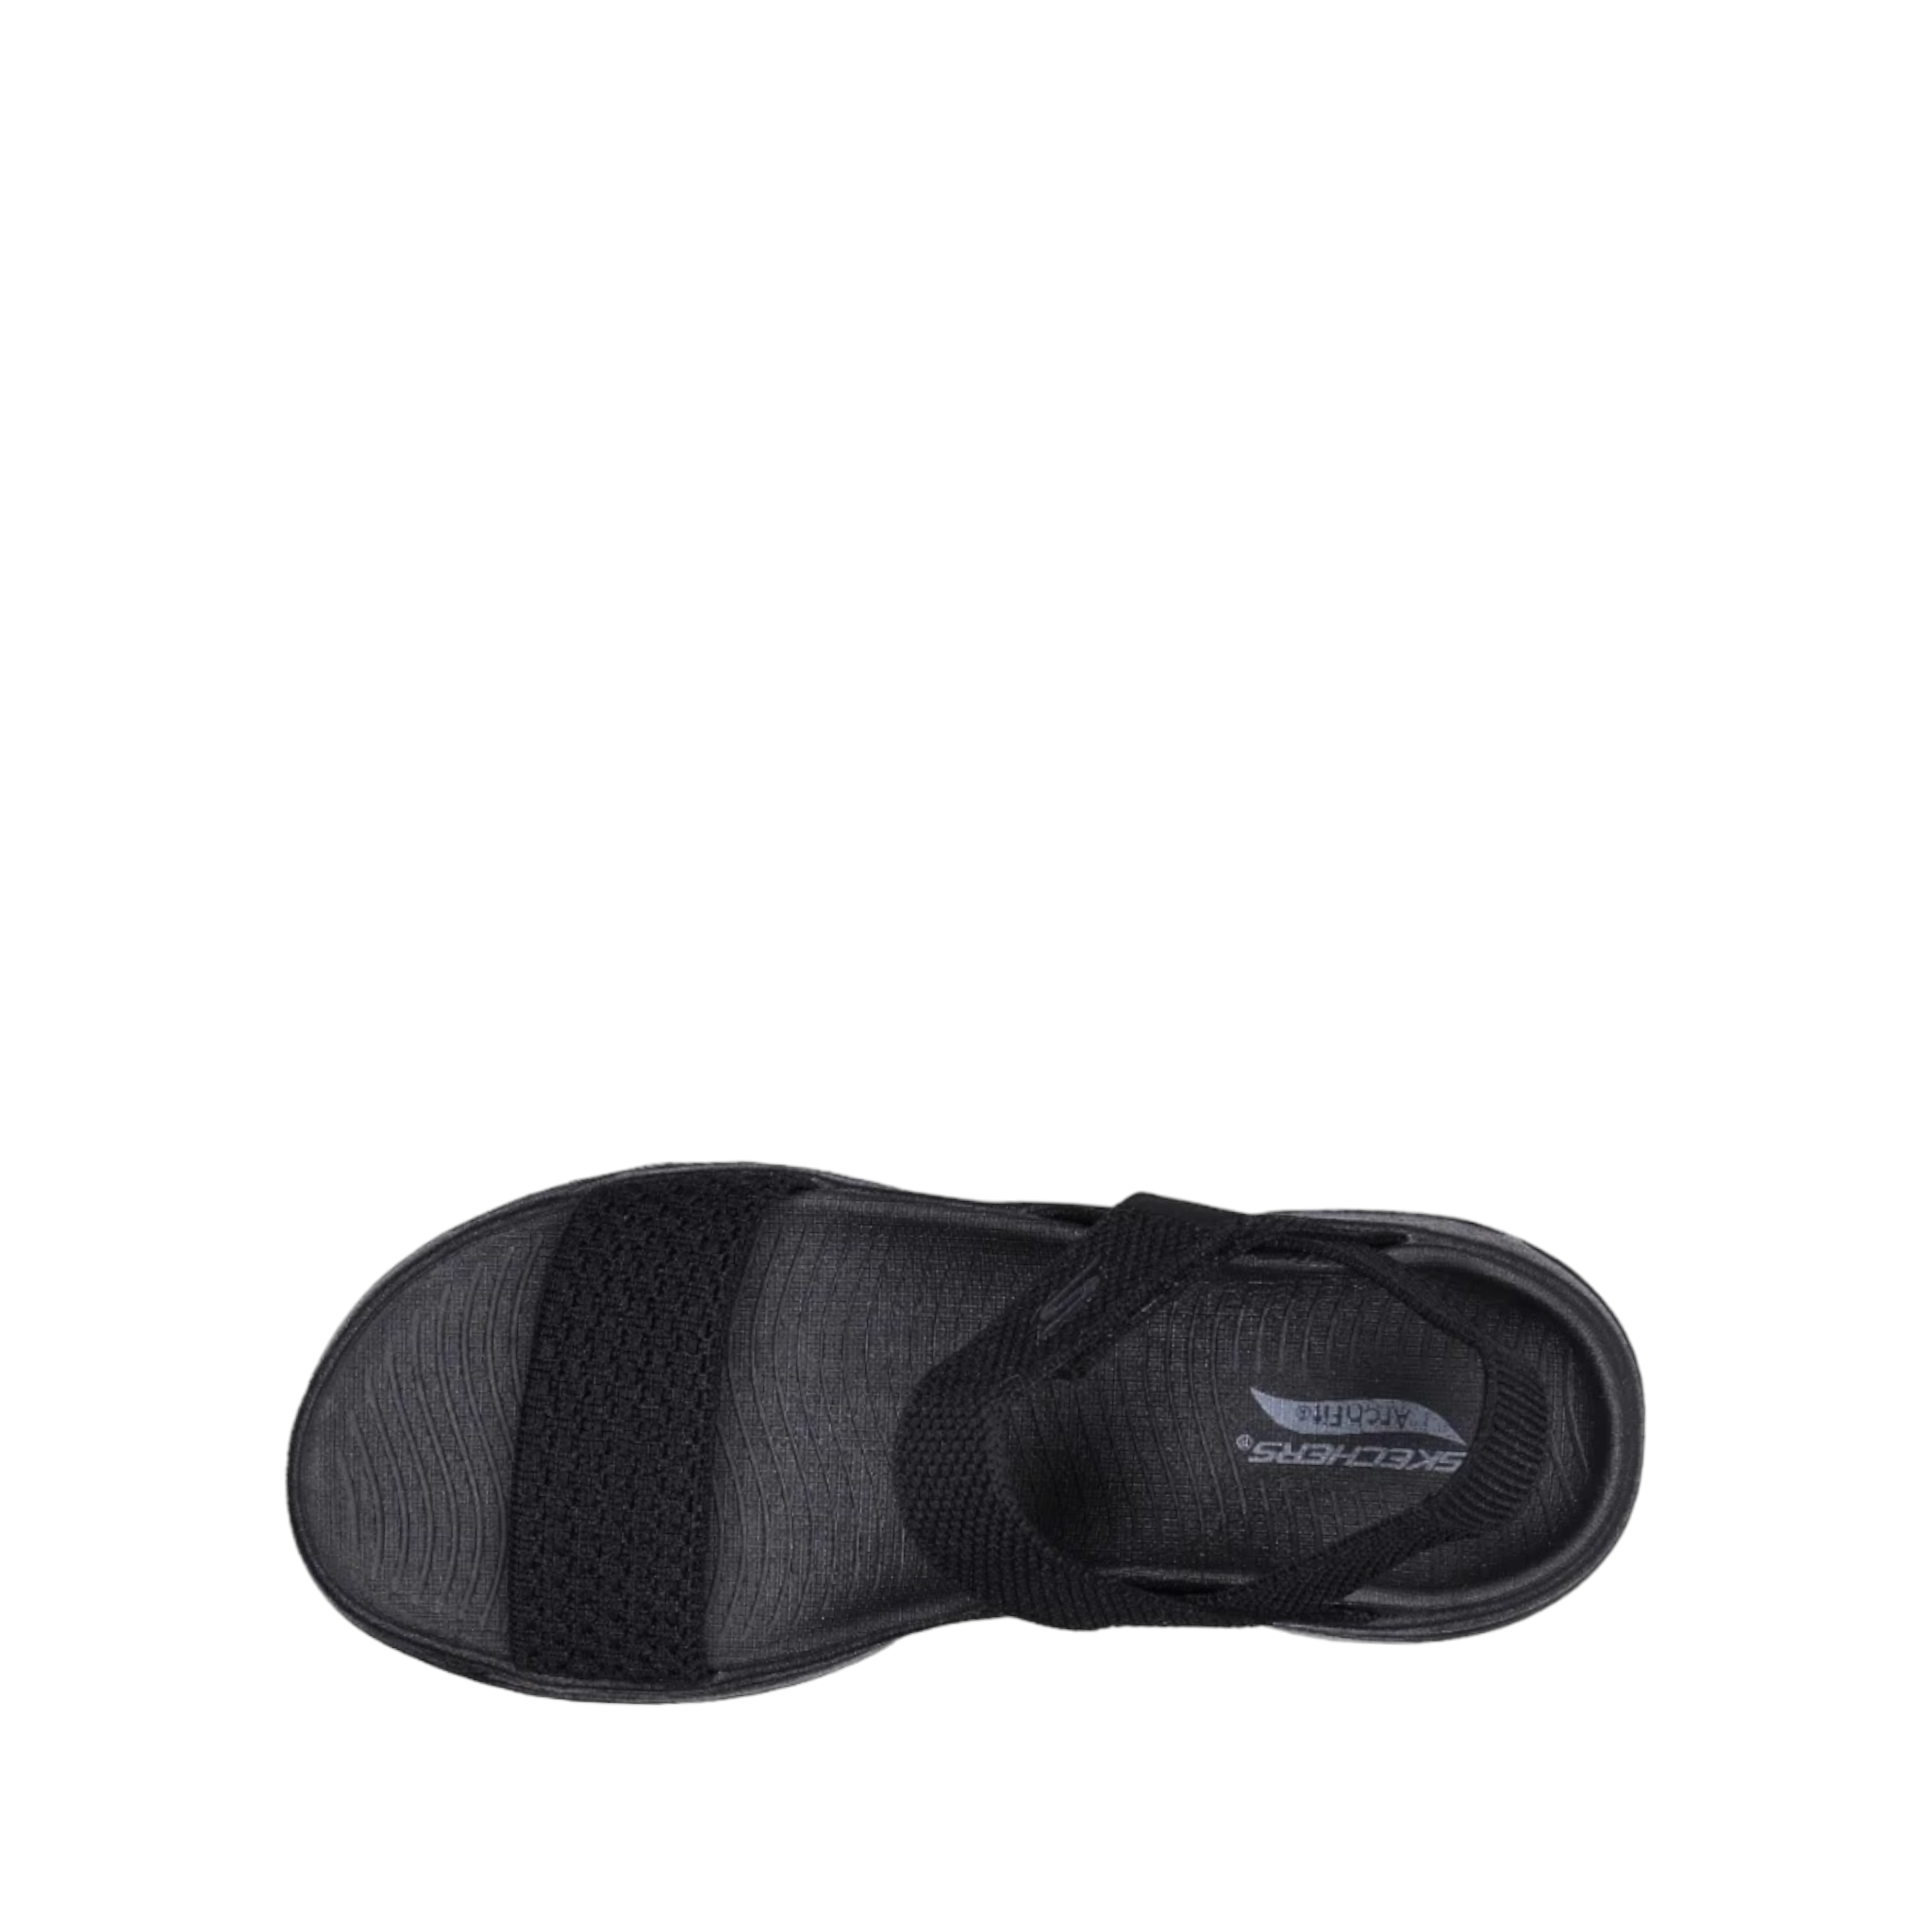 Polished - shoe&amp;me - Skechers - Sandal - Sandals, Summer, Womens